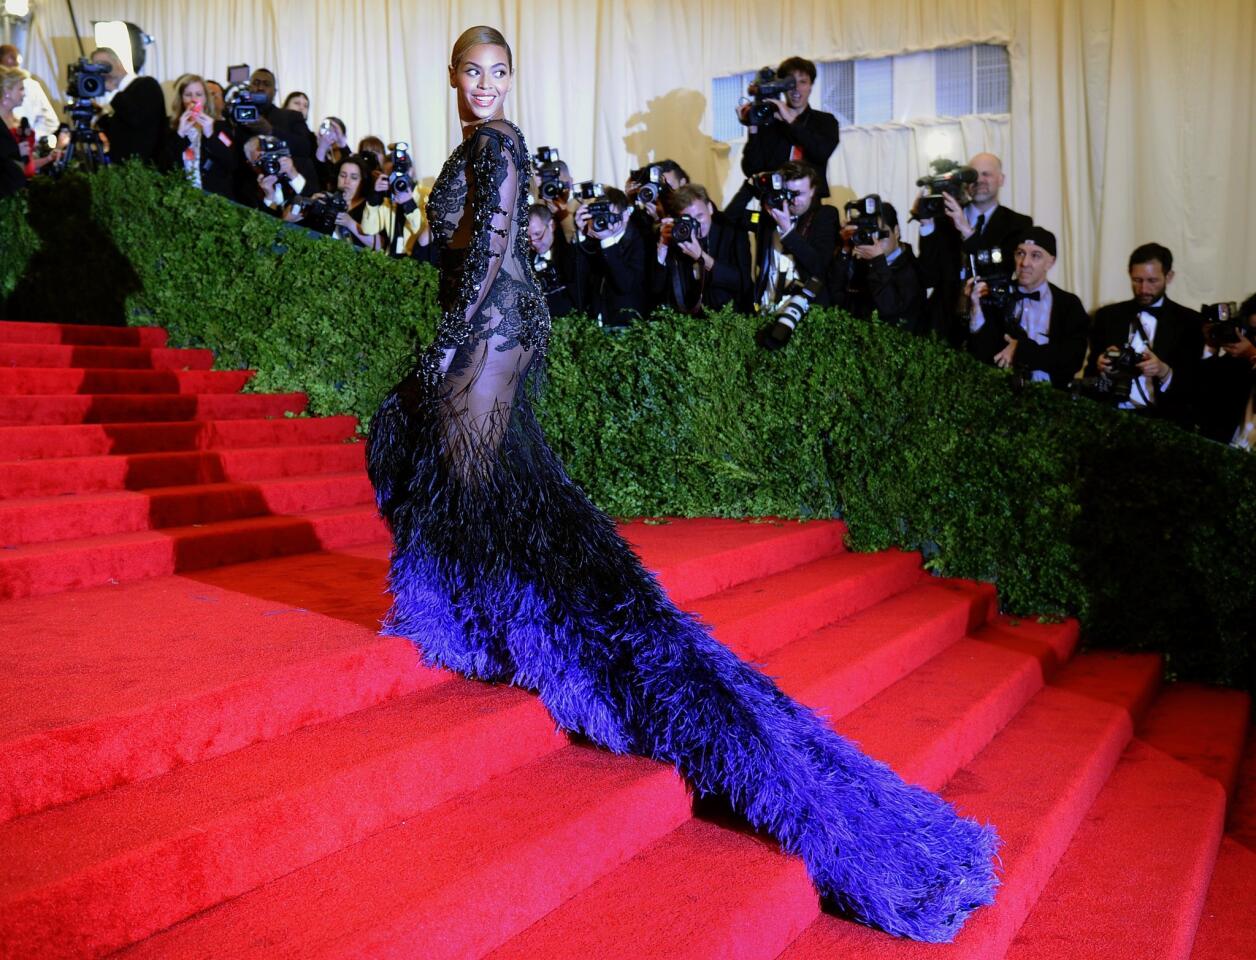 Beyonce at the Met Gala 2012